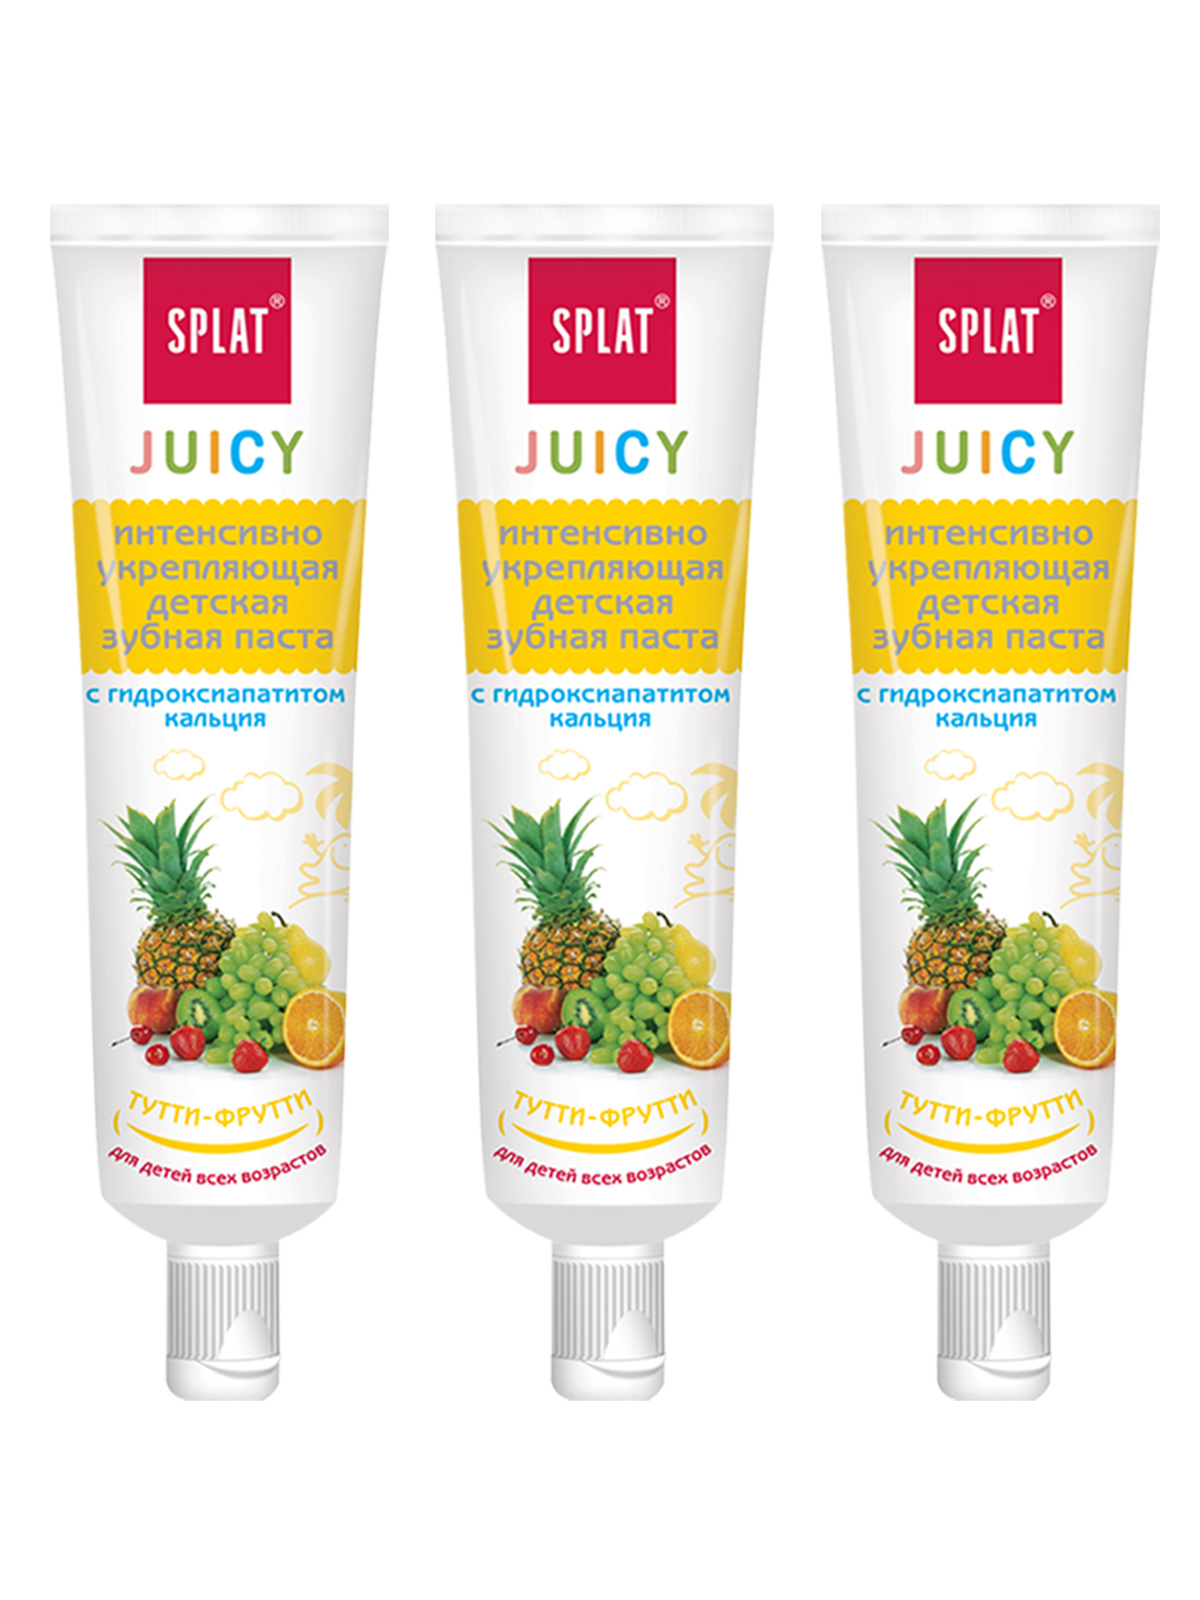 Паста зубная Splat Juicy для детей, тутти-фрутти, 35 мл, 3 шт.